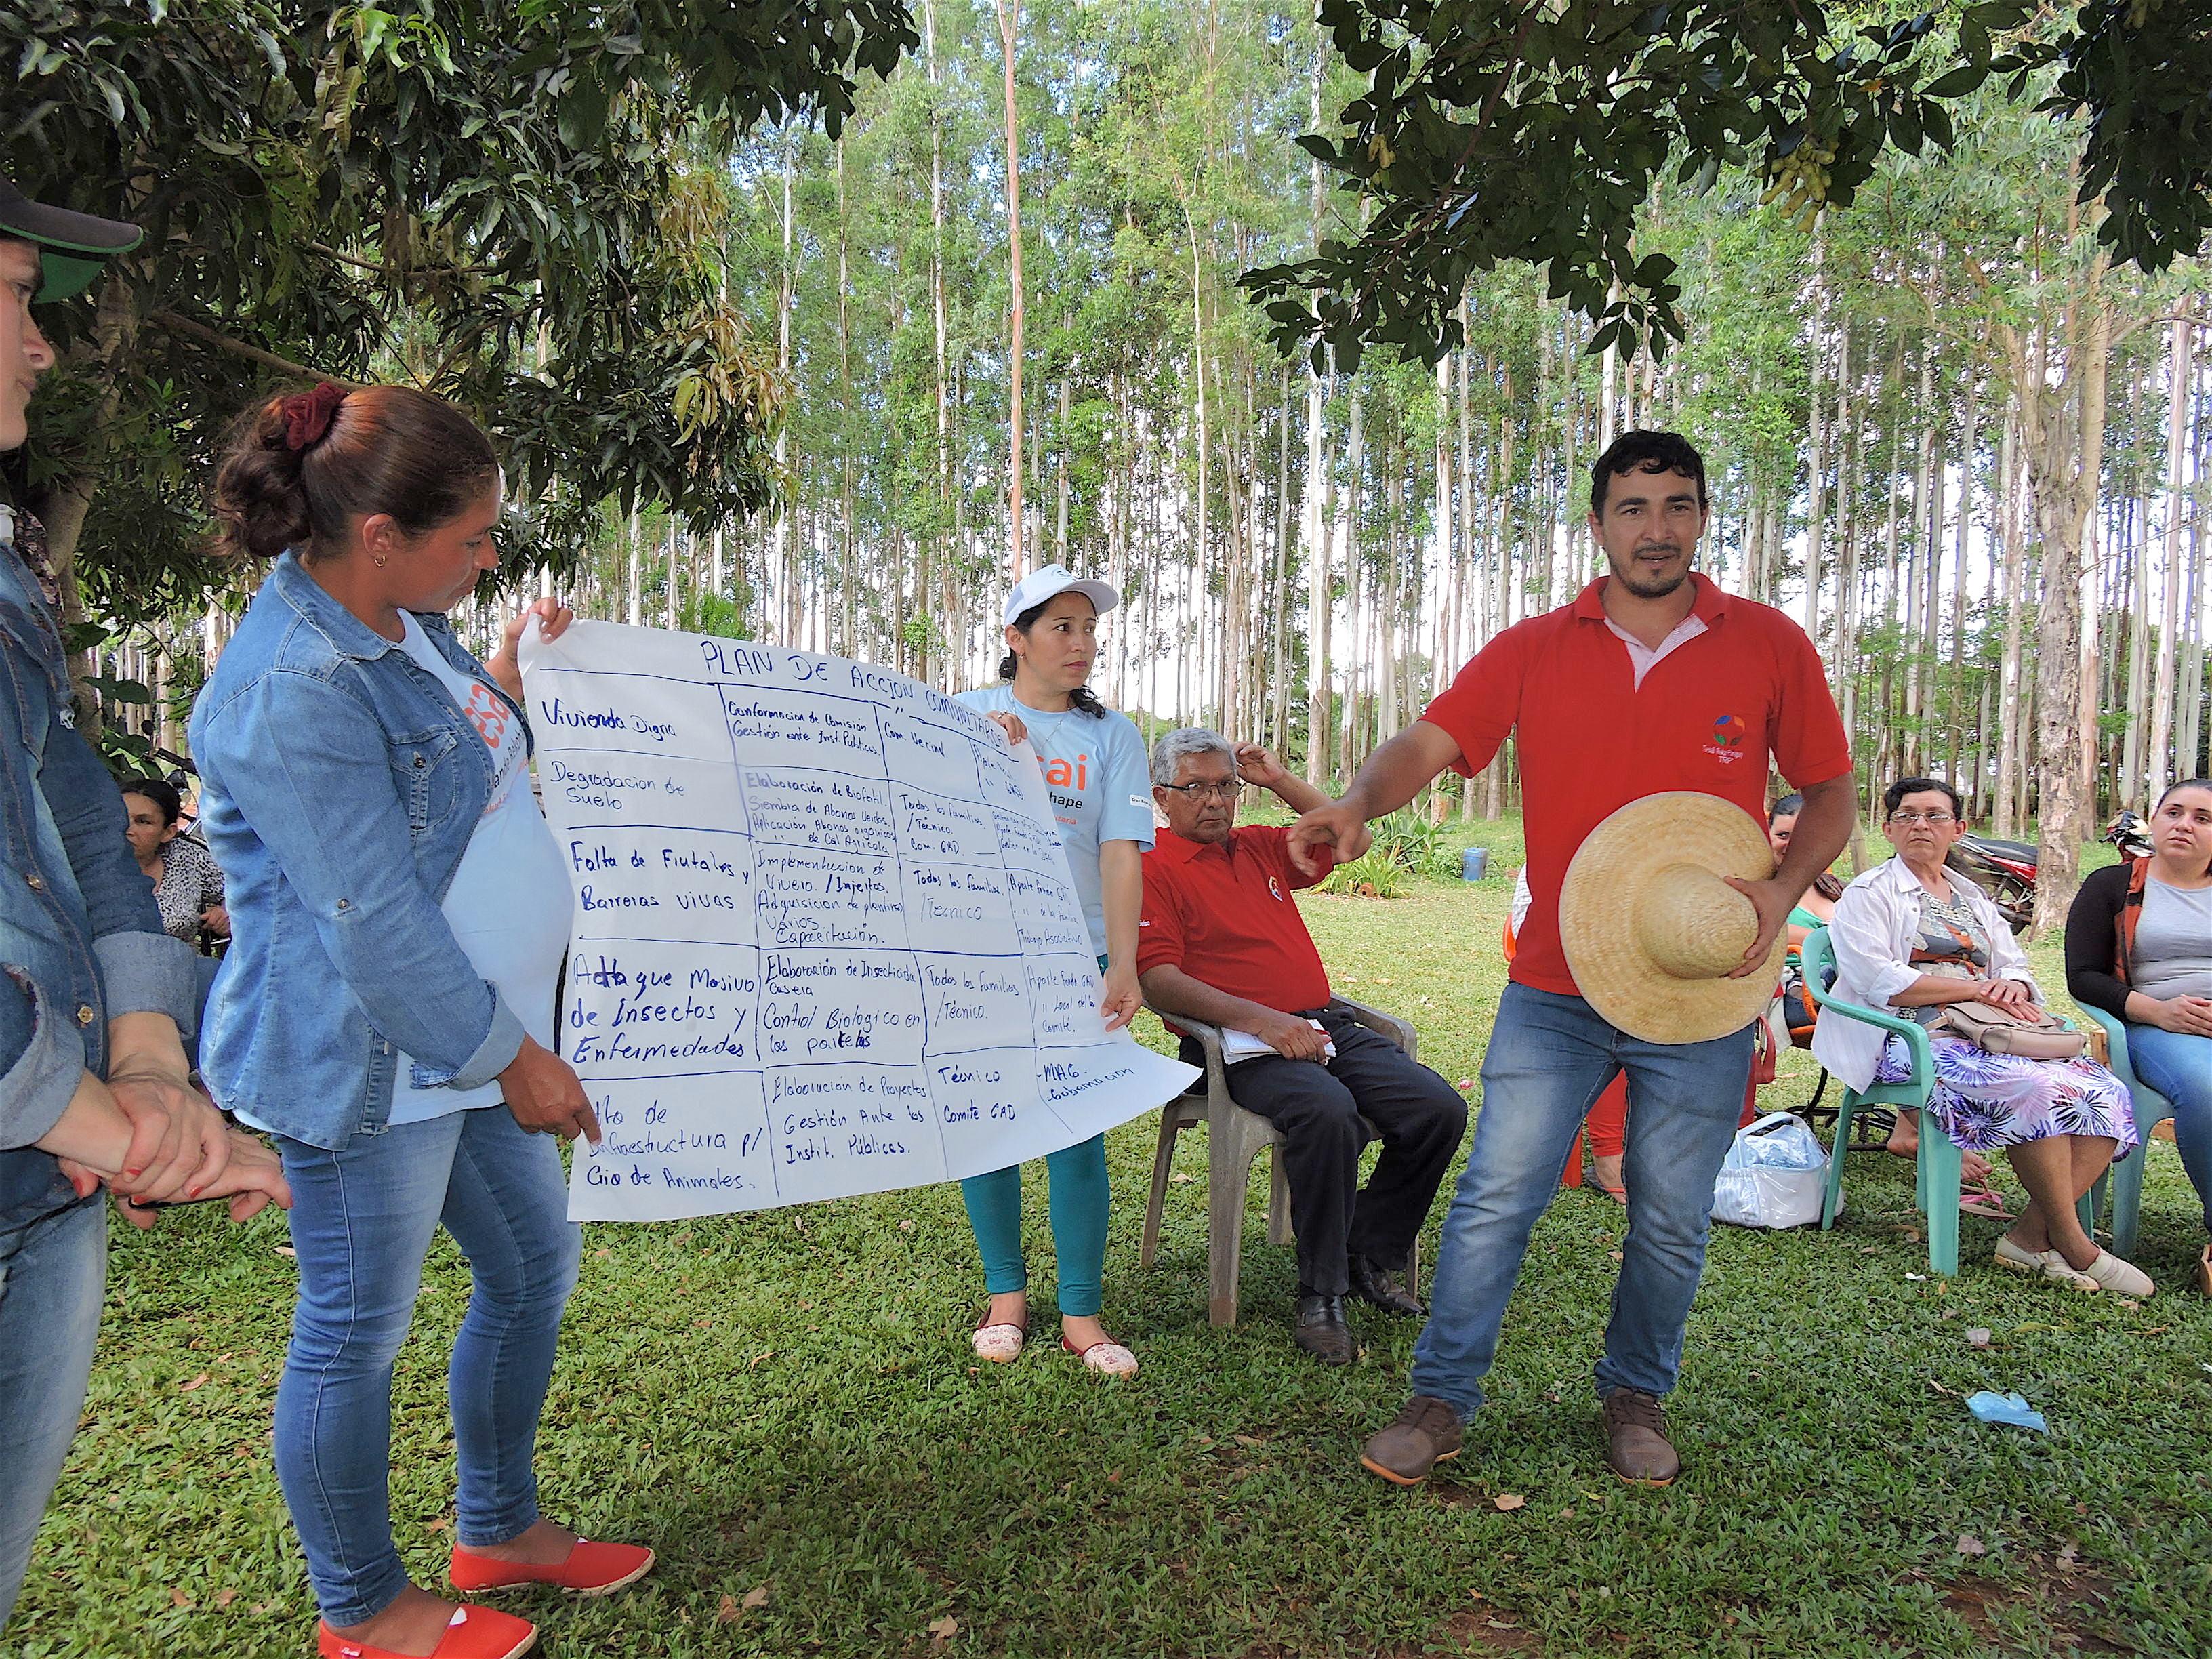 Ein Mann und zwei Frauen stehen in einem Park. Sie halten ein beschriftetes Plakat hoch und erklären der Gemeinde den Inhalt.